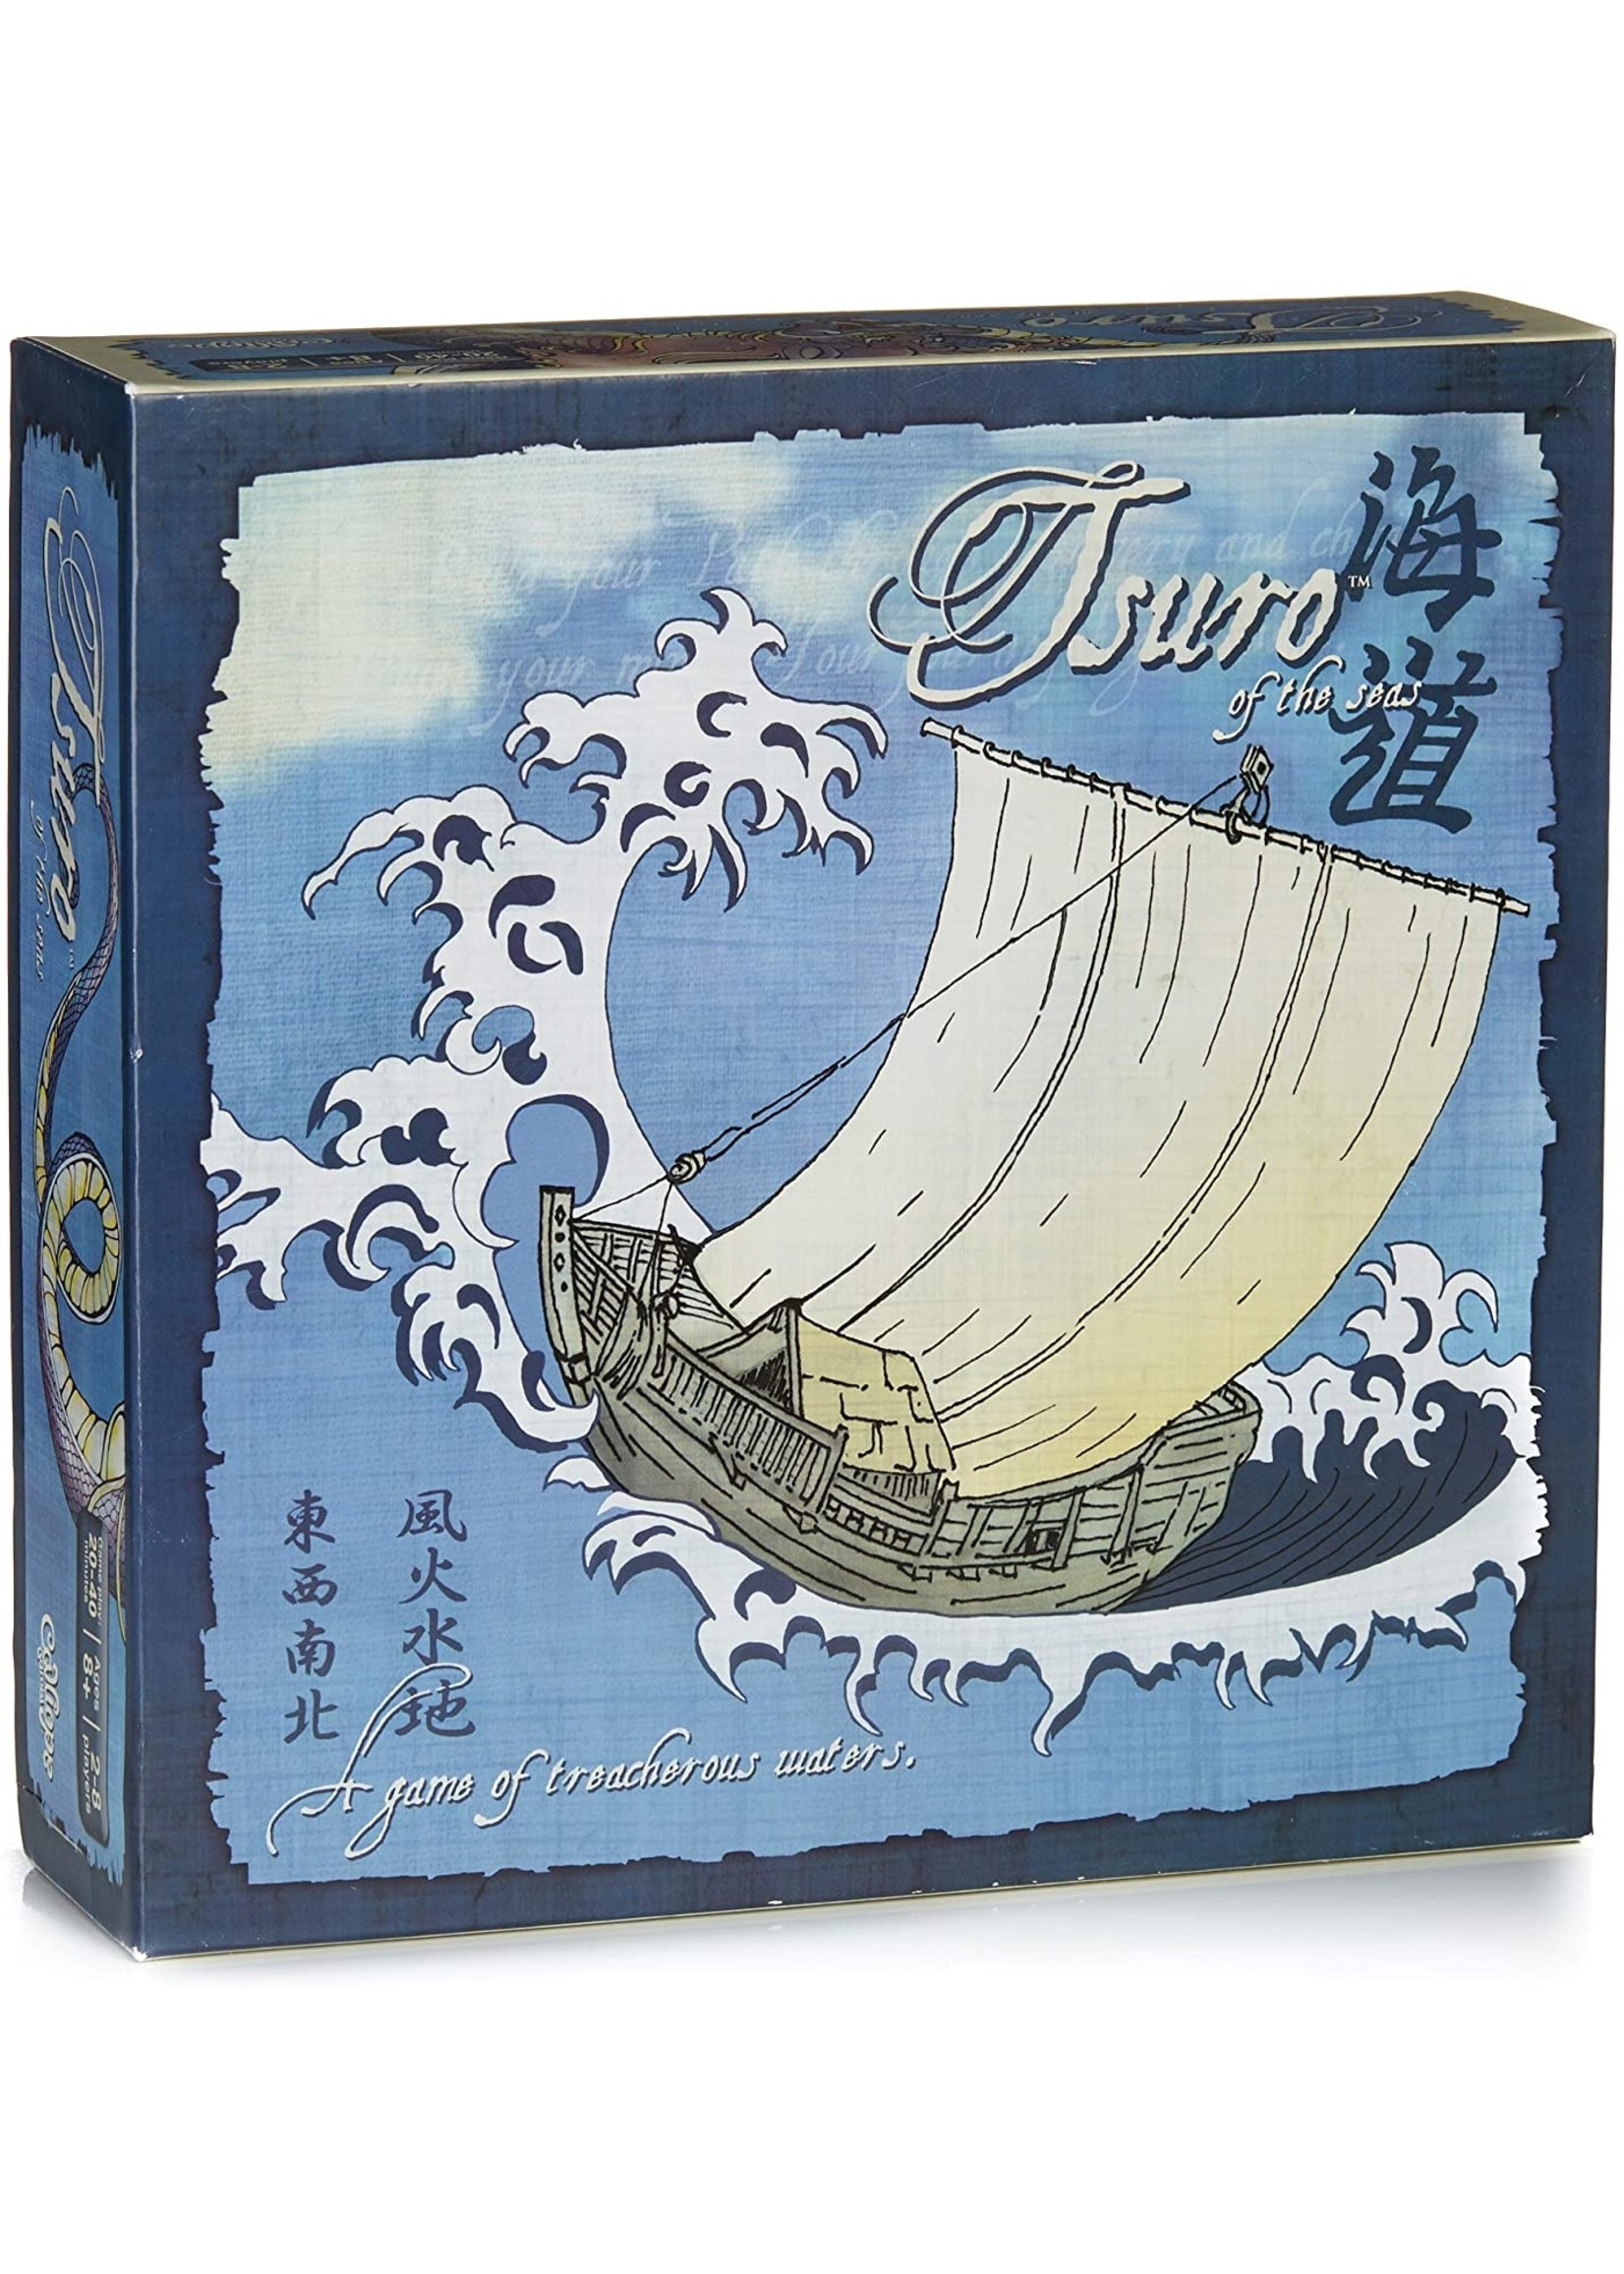 Calliope Games Tsuro of the Seas